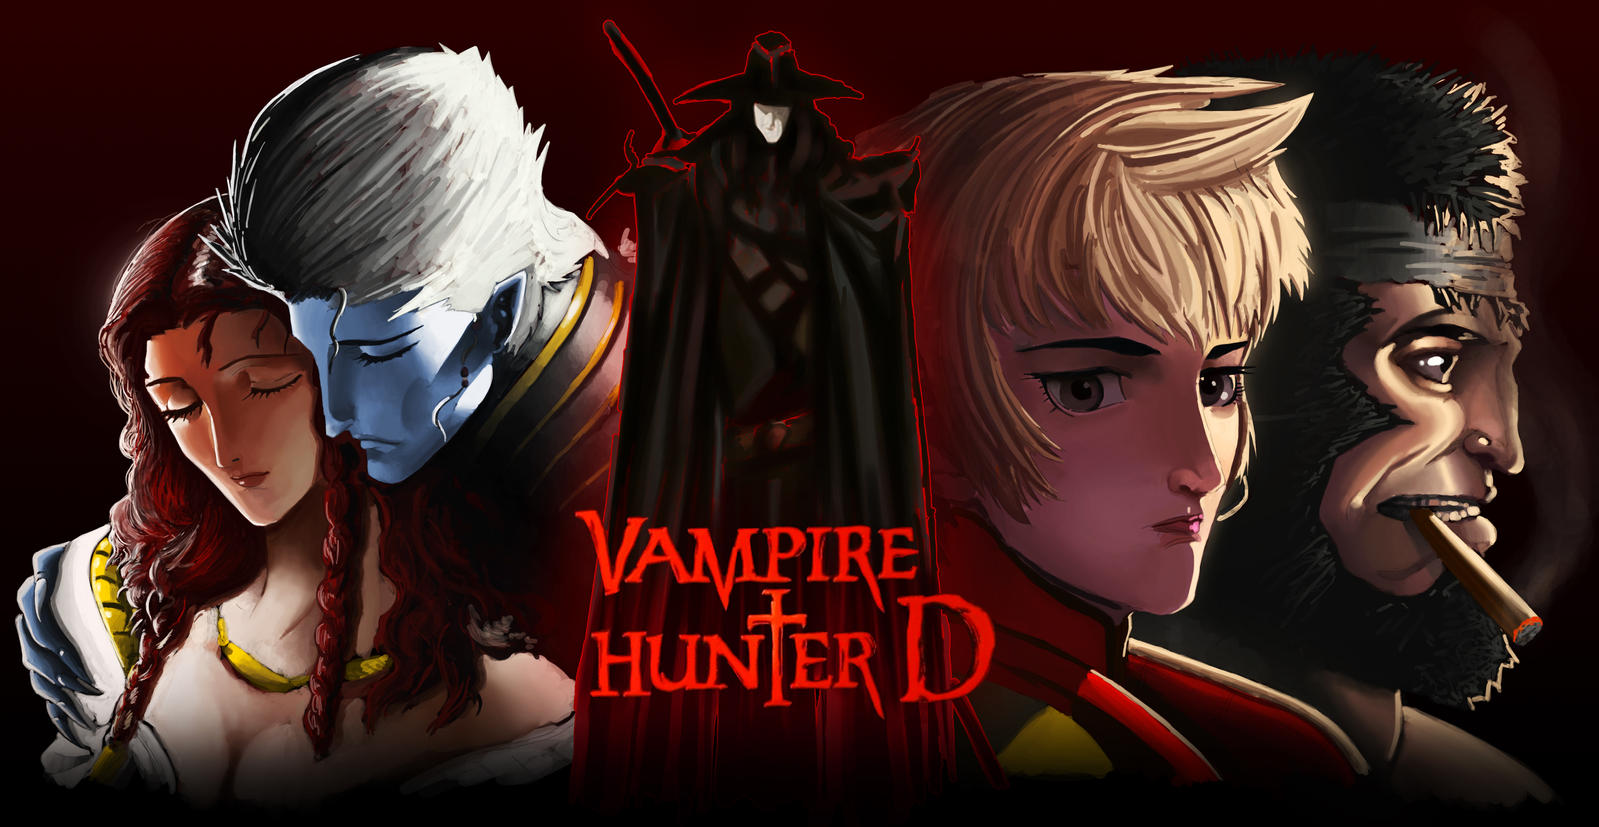 Vampire Hunter D Wallpaper: Vampire Hunter D Bloodlust Wallpaper